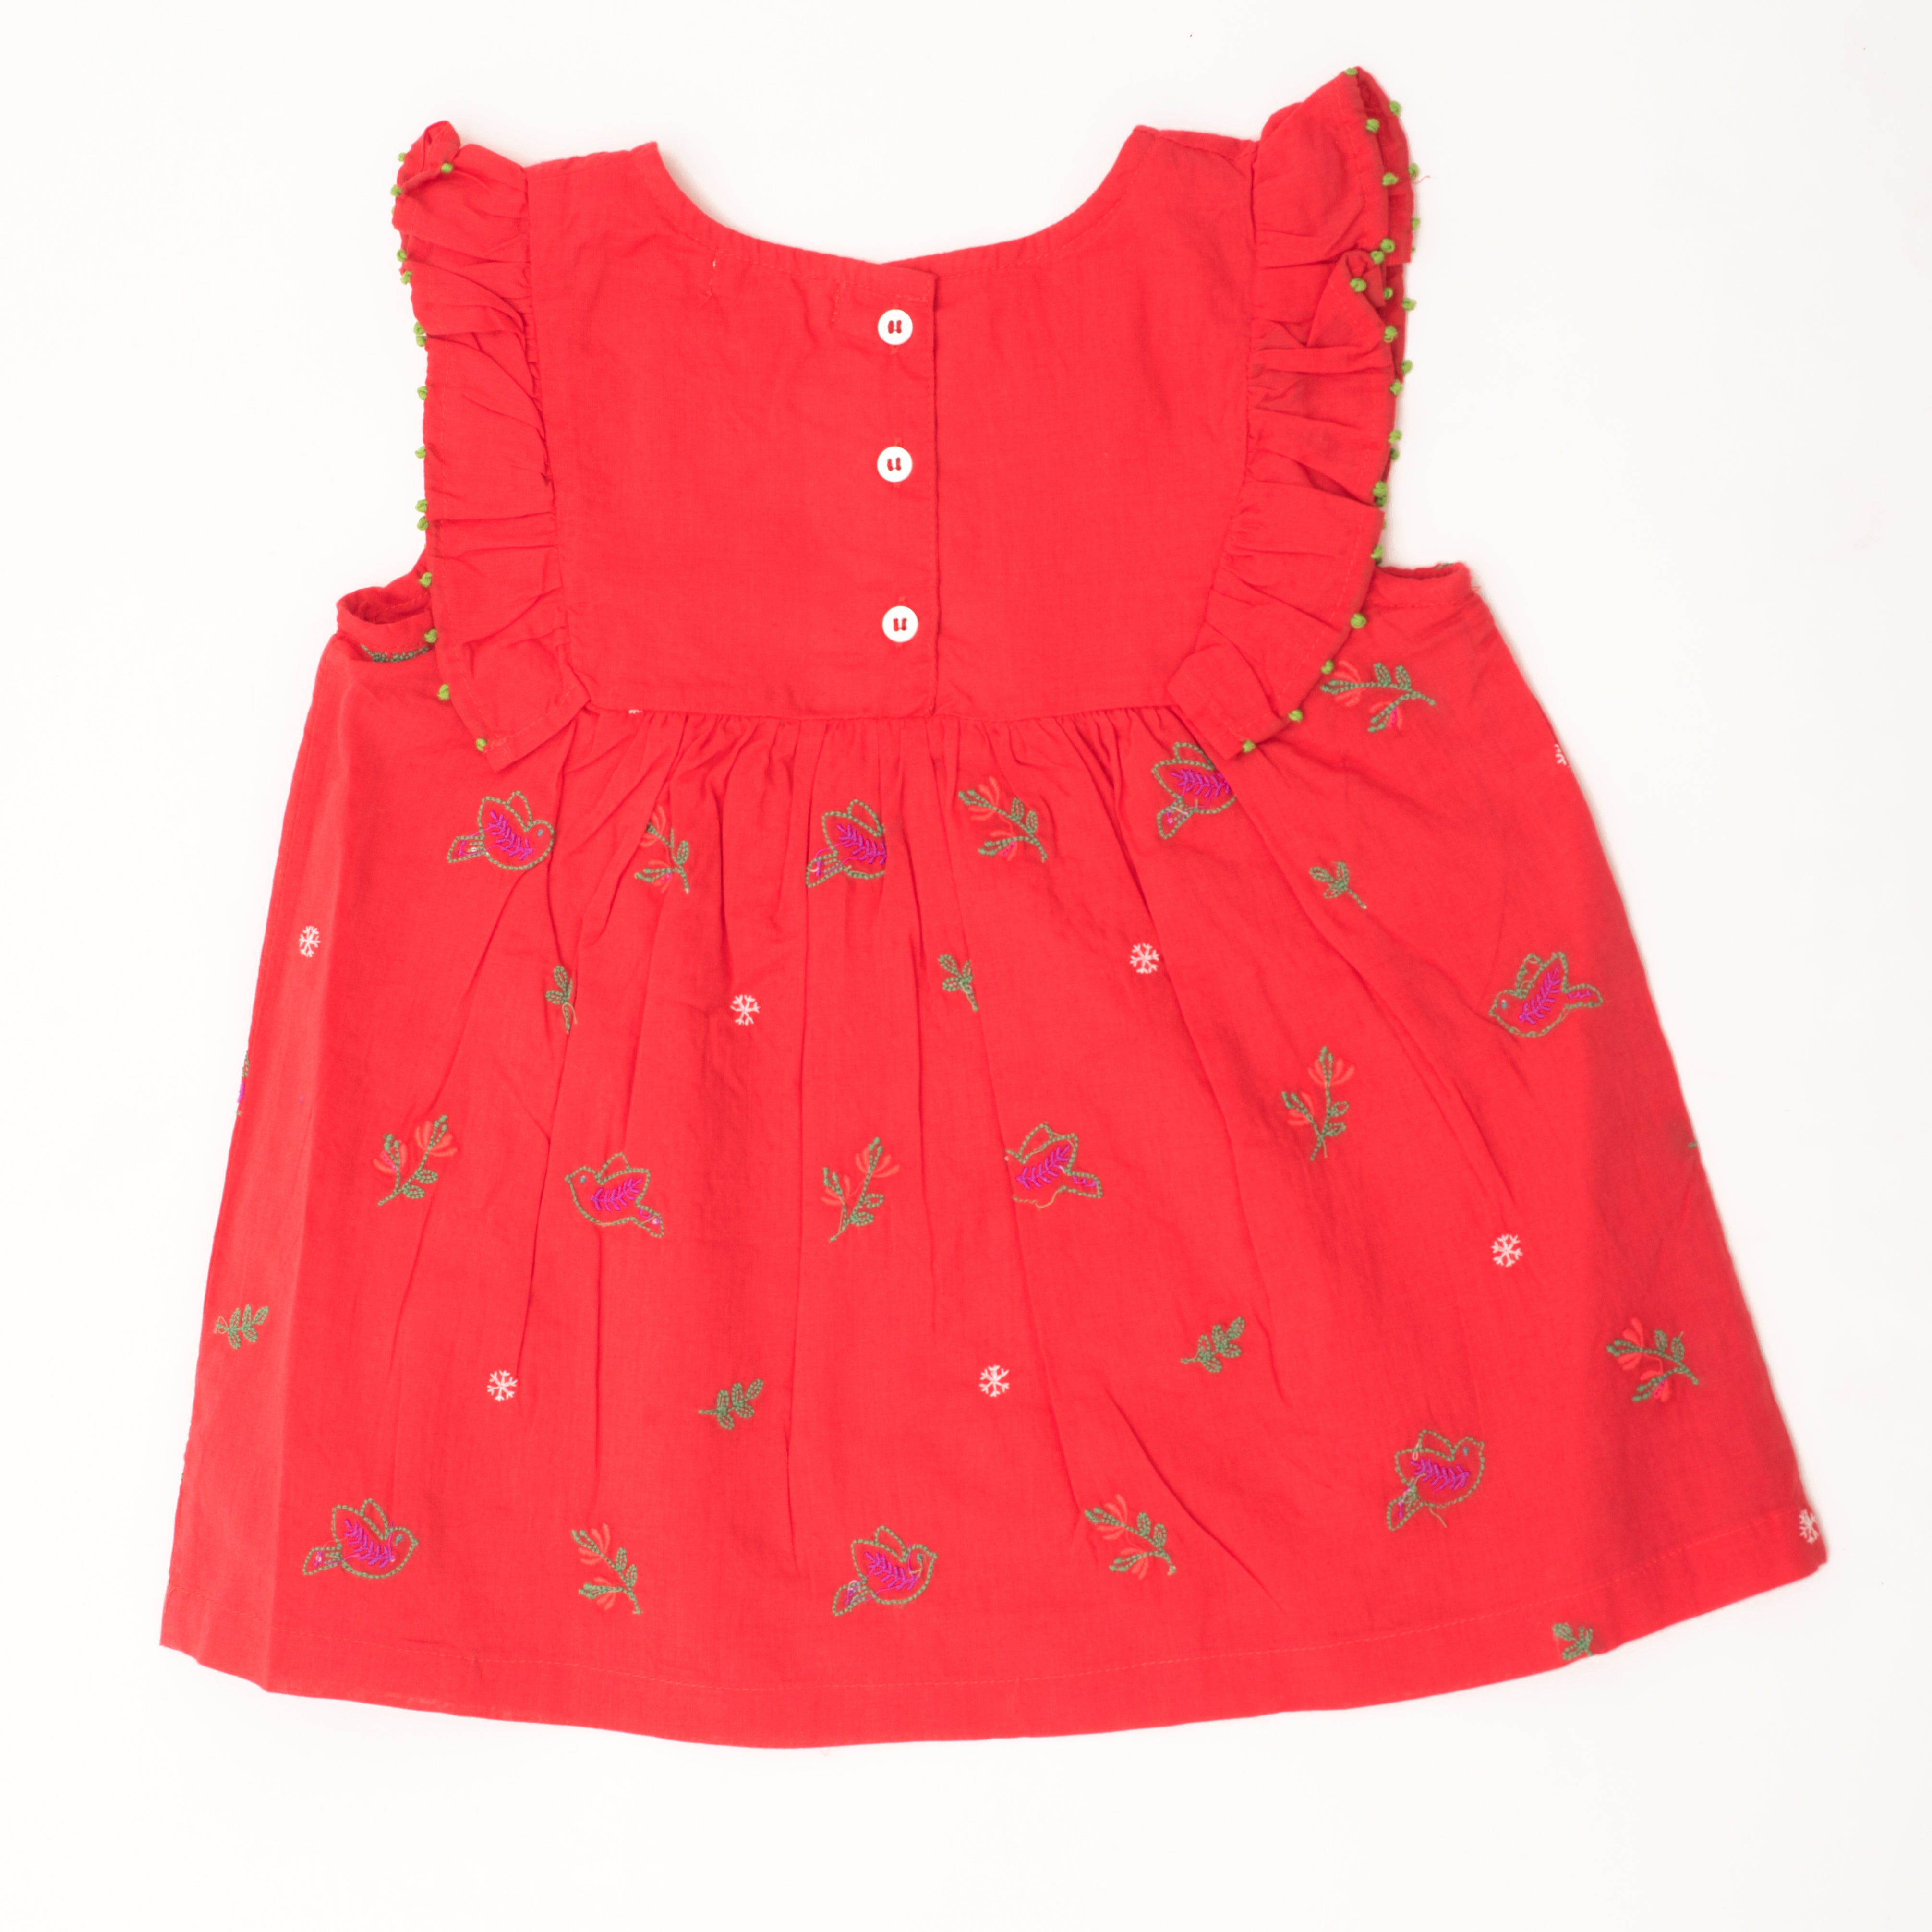 Red birdie dress